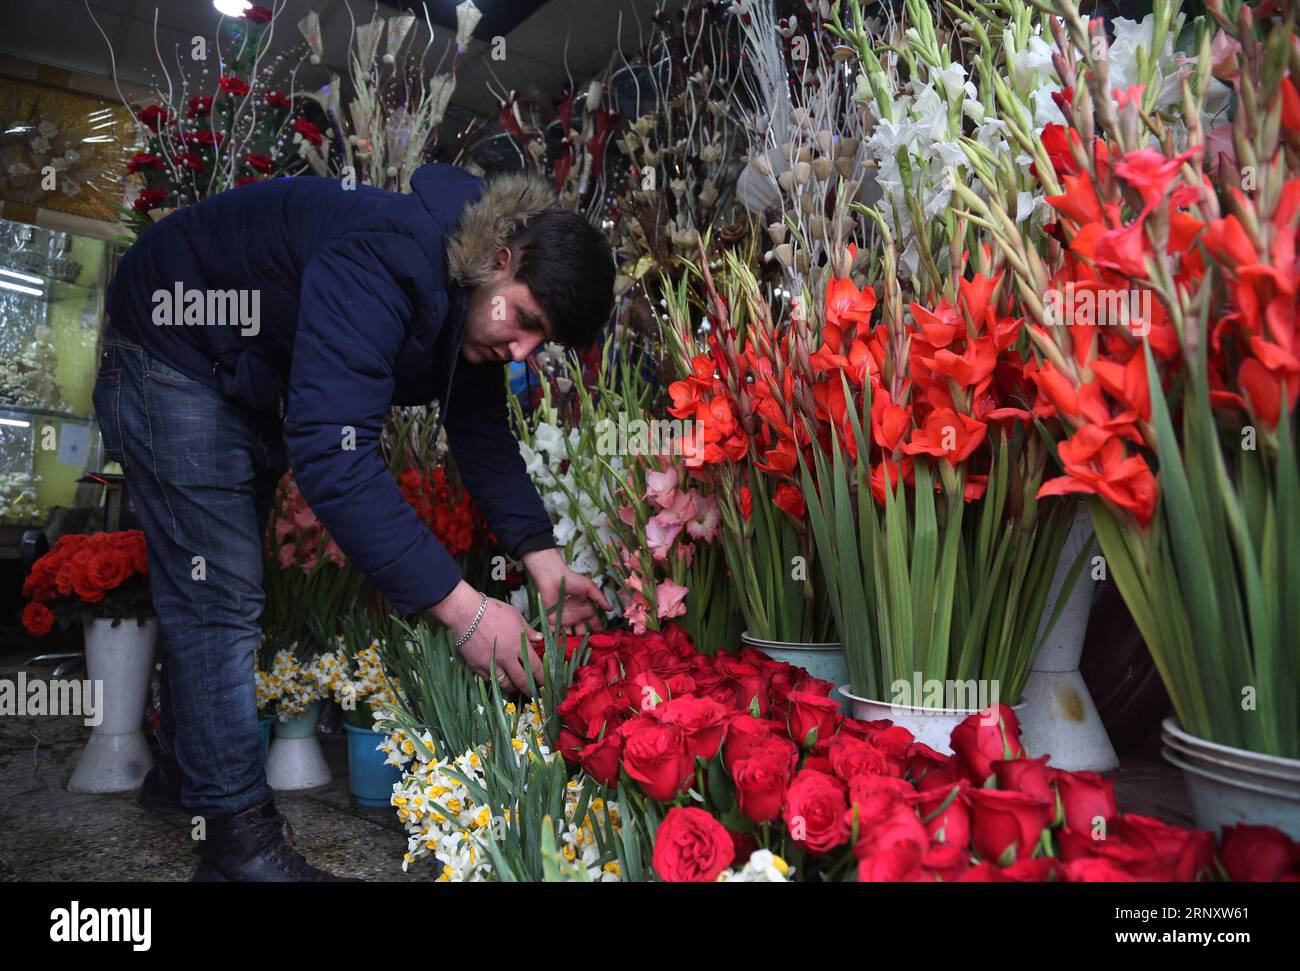 (180213) -- KABUL, 13. Februar 2018 -- Ein Verkäufer bereitet Blumen vor dem Valentinstag in einem Blumenladen in Kabul, Hauptstadt Afghanistans, 13. Februar 2018. Traditionell sind sich die meisten Afghanen des Valentinstages nicht bewusst, aber einige Jugendliche nehmen einen neuen Lebensstil an, um den Tag zu feiern, indem sie Blumen an ihre Lieben schicken. ) (srb) AFGHANISTAN-KABUL-VORBEREITUNG AUF DEN VALENTINSTAG RahmatxAlizadah PUBLICATIONxNOTxINxCHN Stockfoto